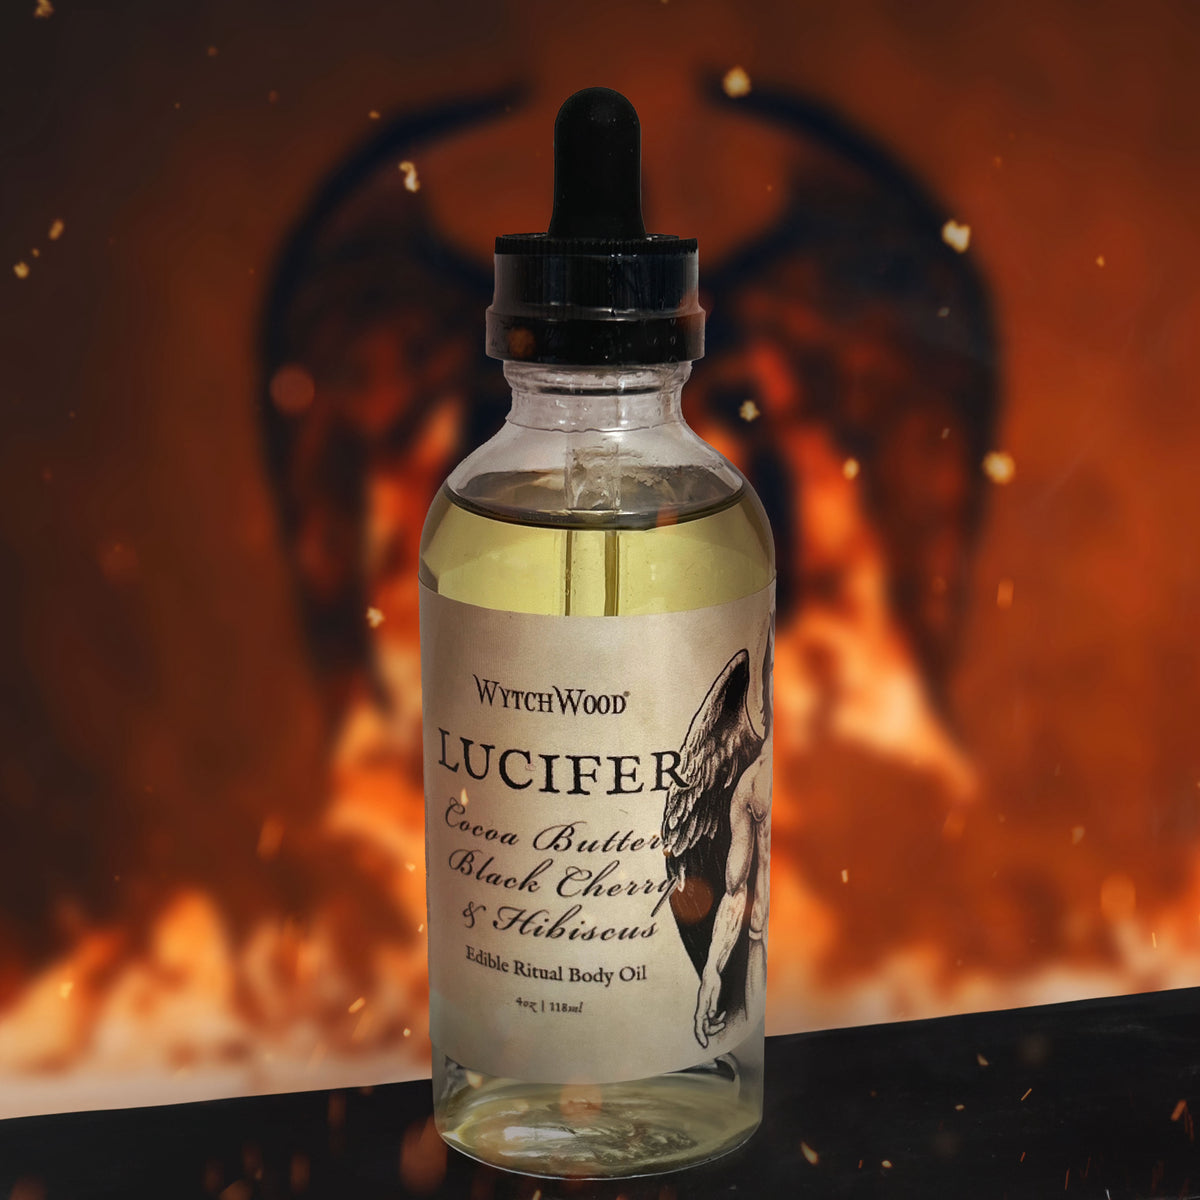 WytchWood&#39;s Lucifer Edible Ritual Body Oil